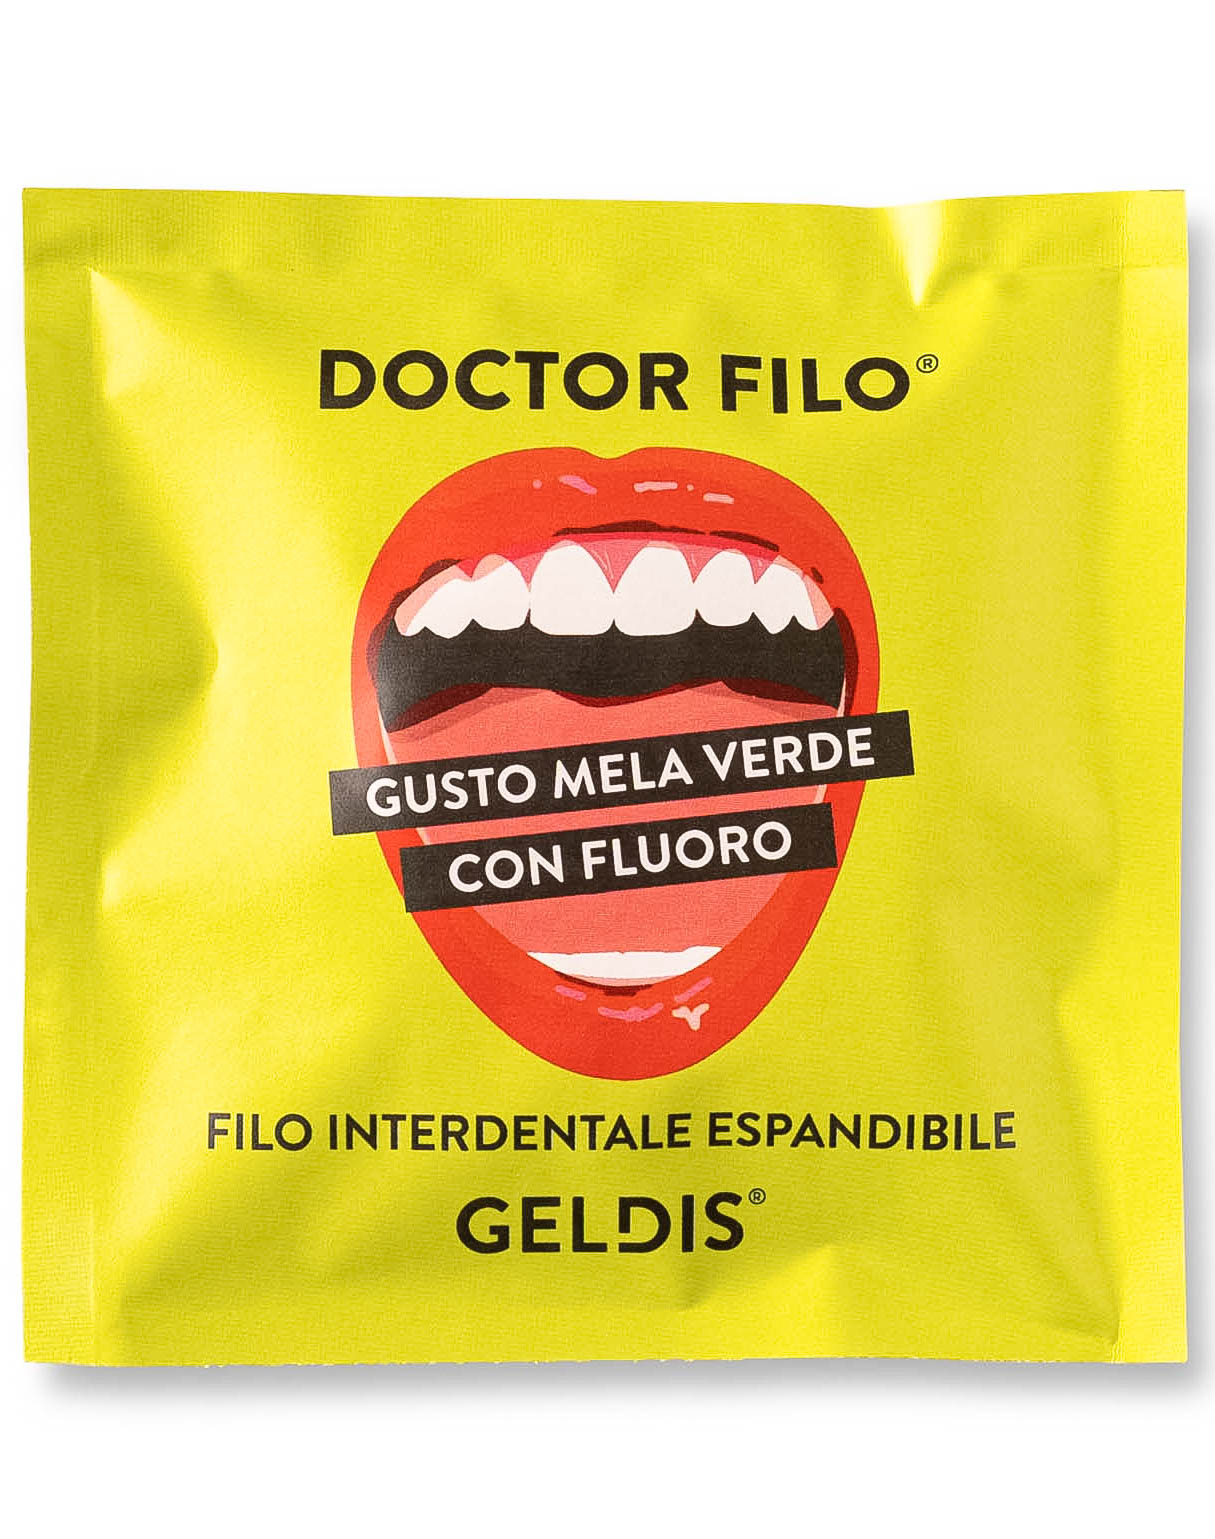 Geldis Doctor Filo Filo Interdentale Espandibile alla Mela Verde con Fluoro - 30 mt